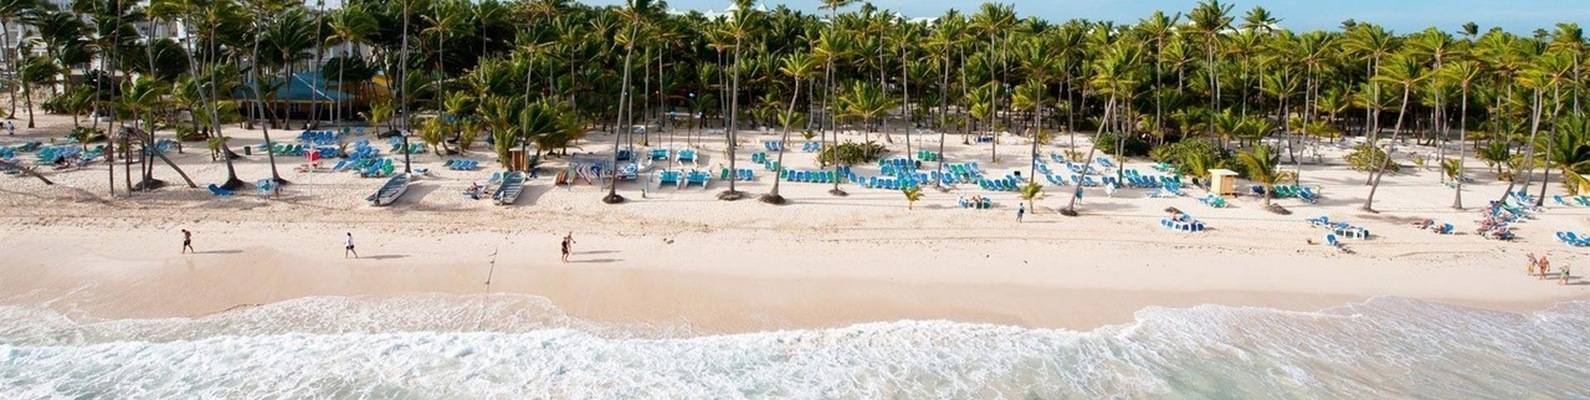 Празднование нового года 2022 в доминикане: где лучше отдыхать? какой выбрать отель и курорт? когда бронировать тур? - поиск путешествий и туров авиабилеты с москвы авиаол